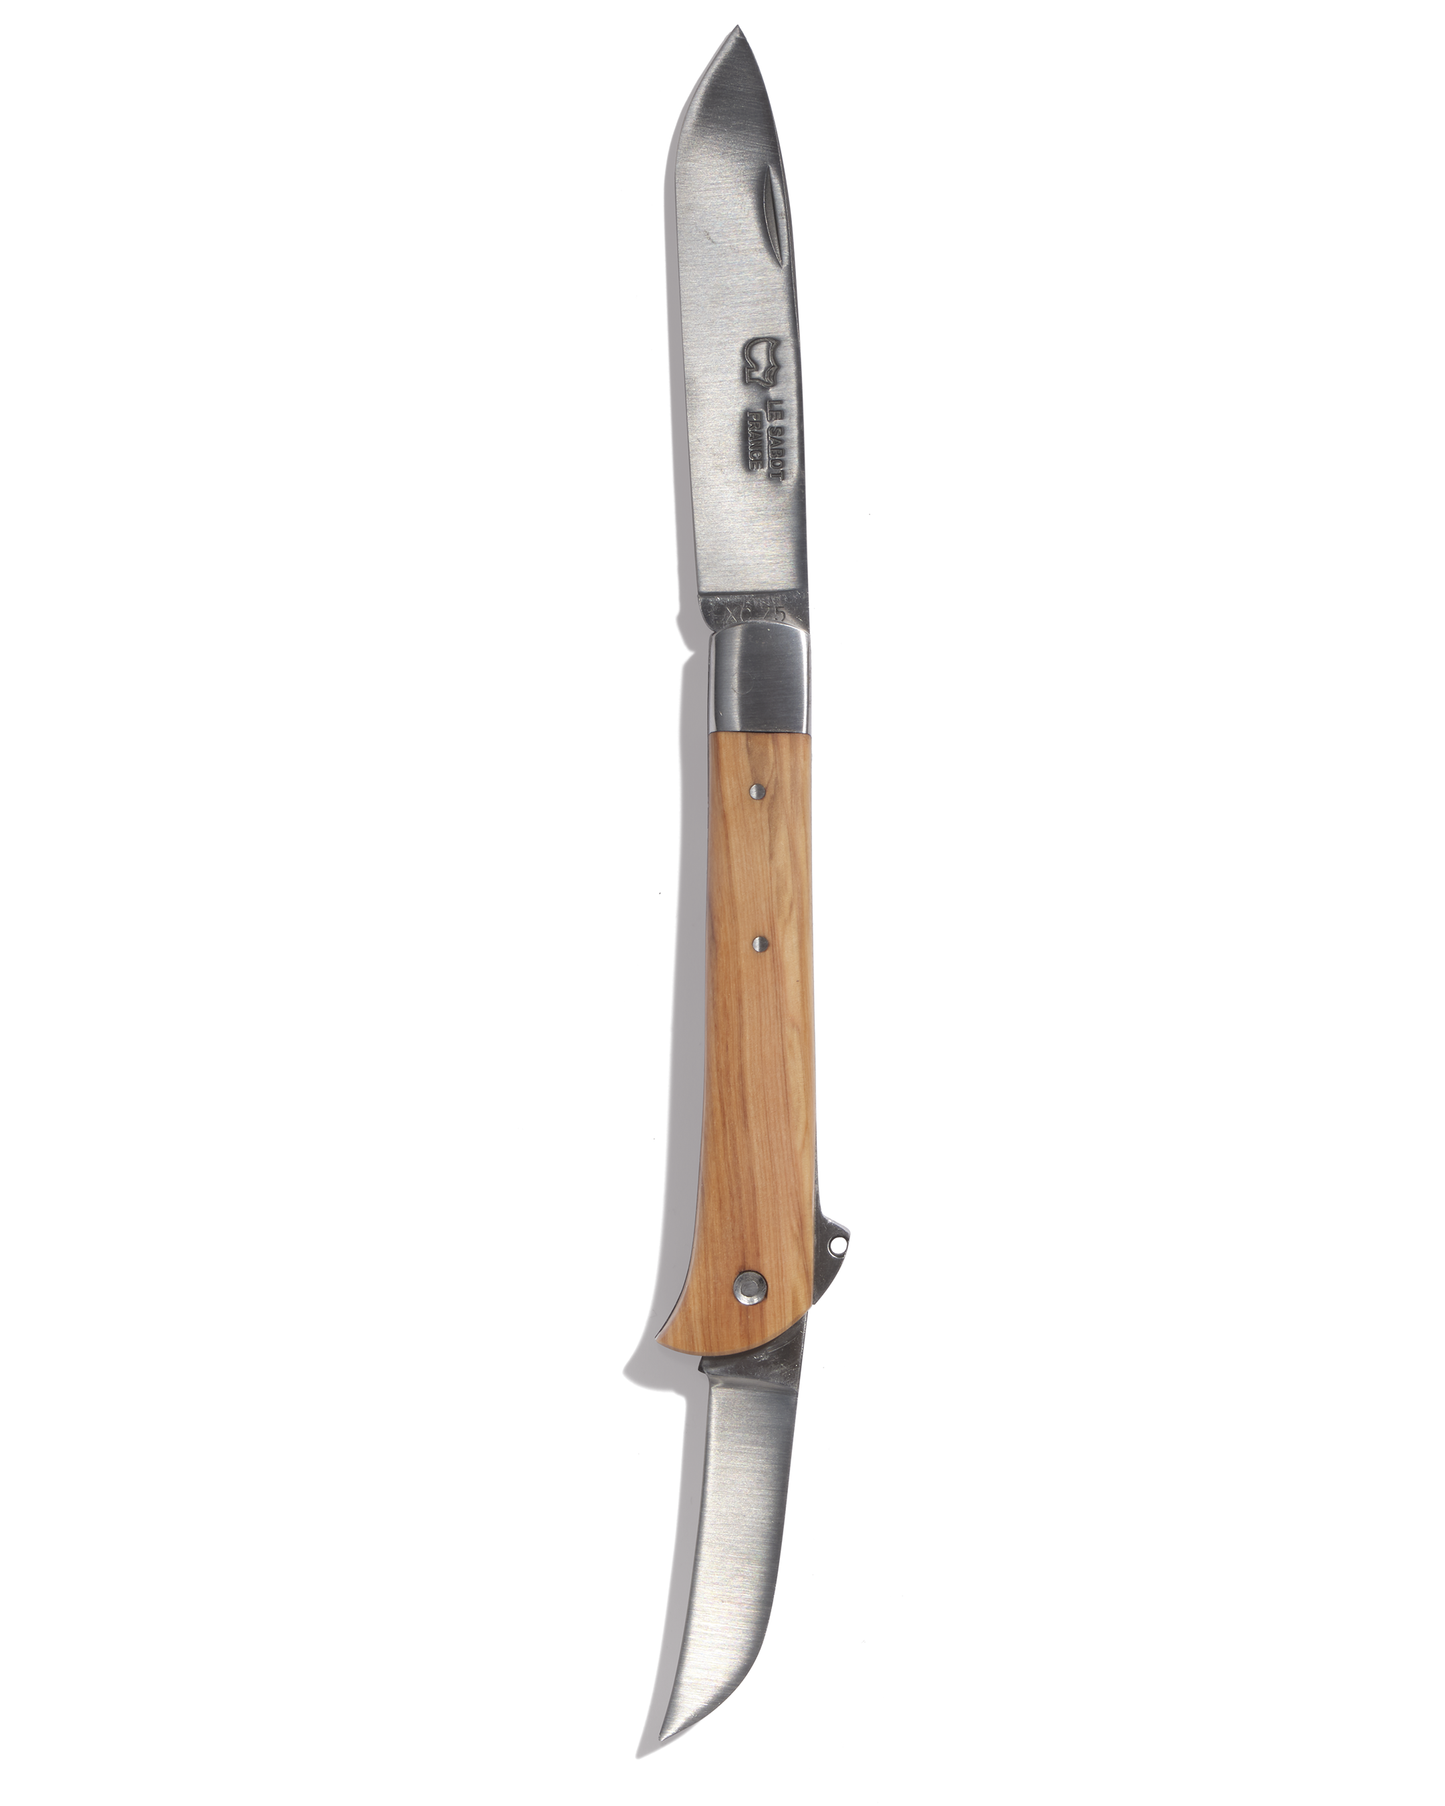 Bi-blade shepherd's knife